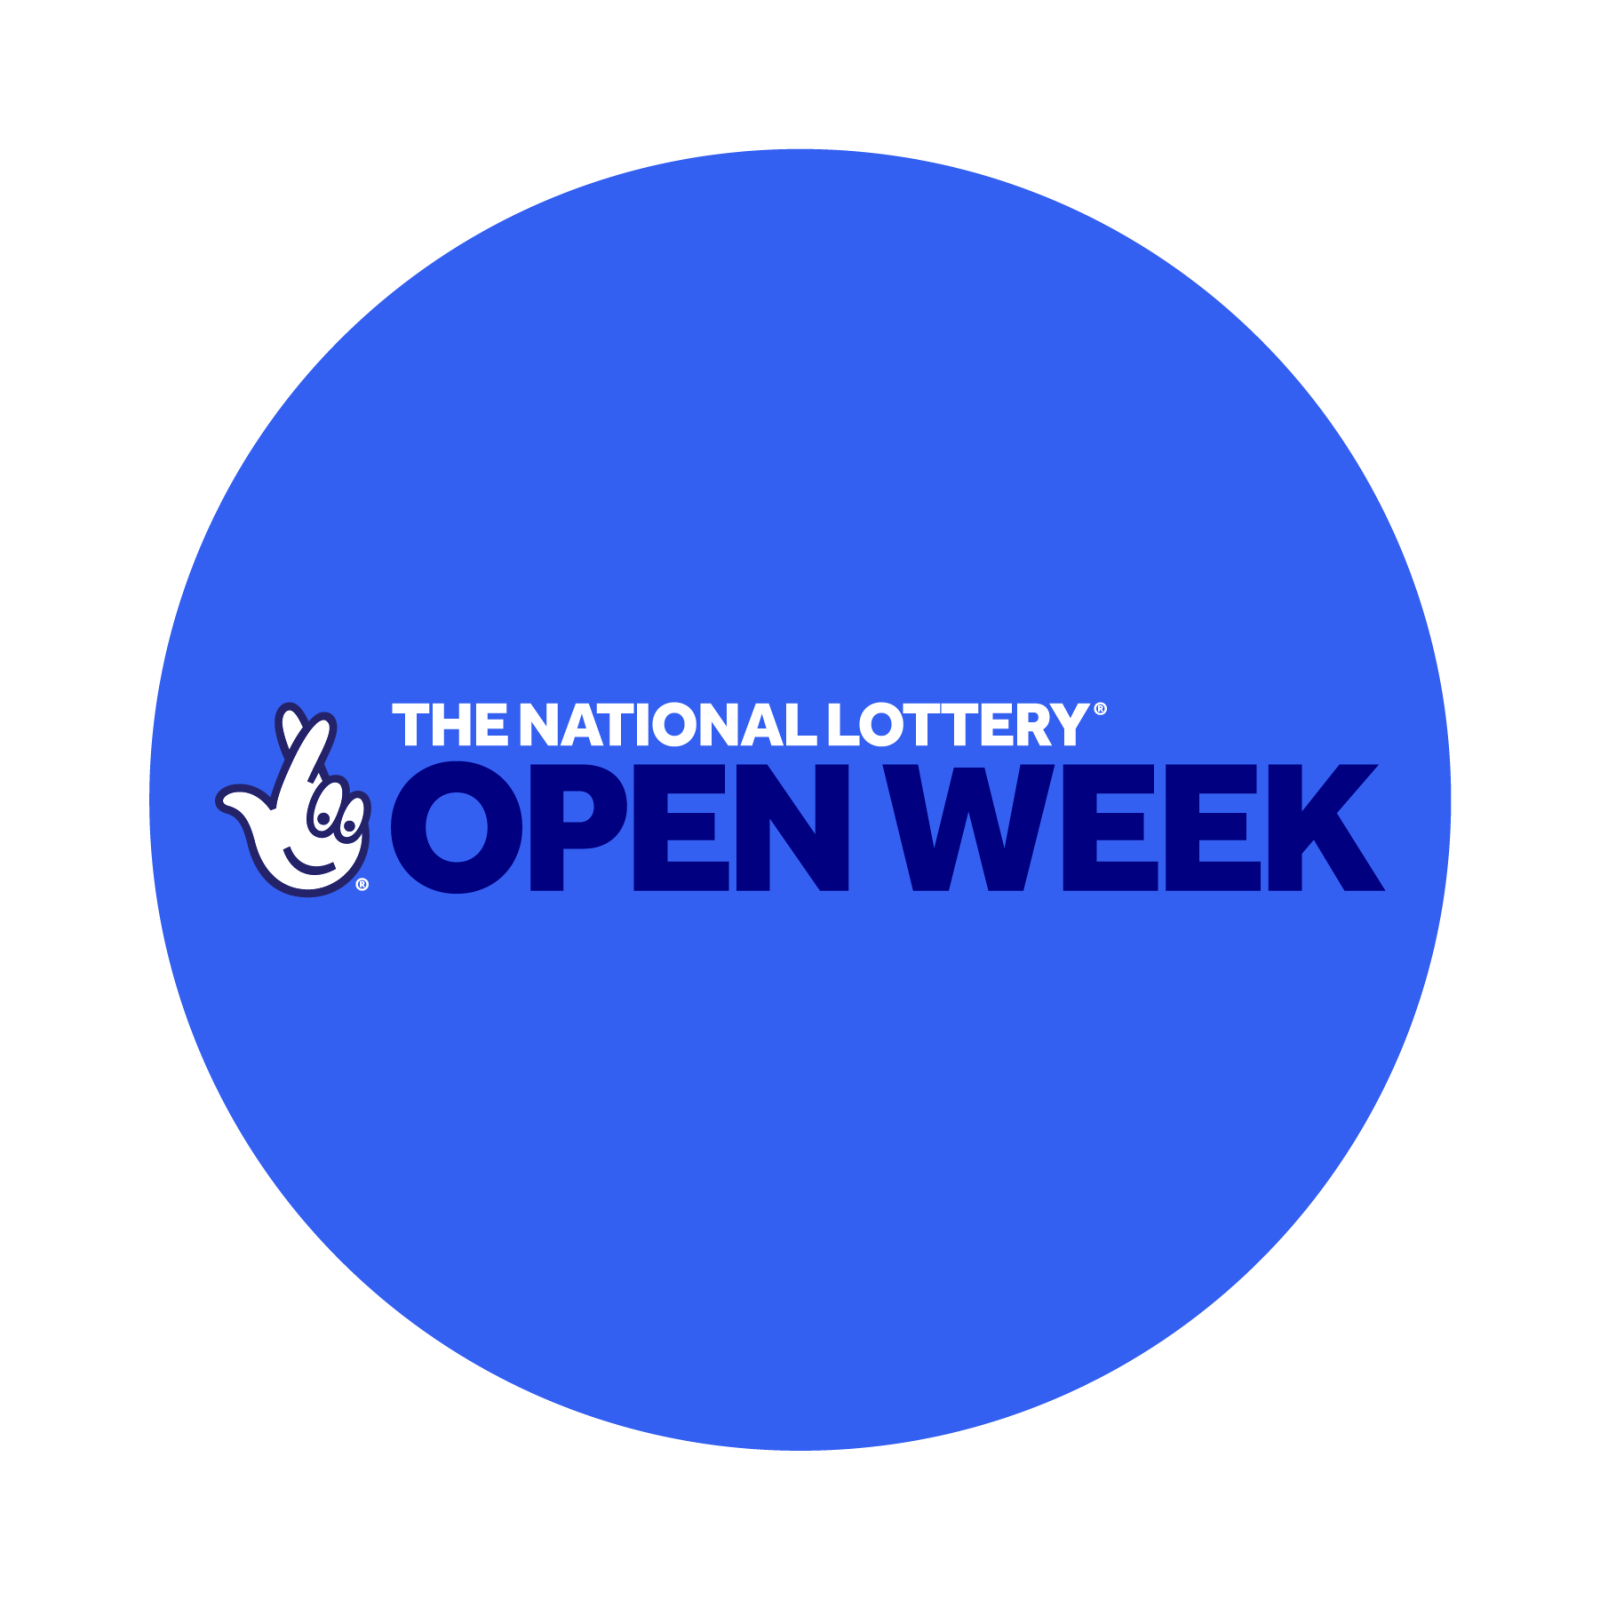 National Lottery Open Week logo